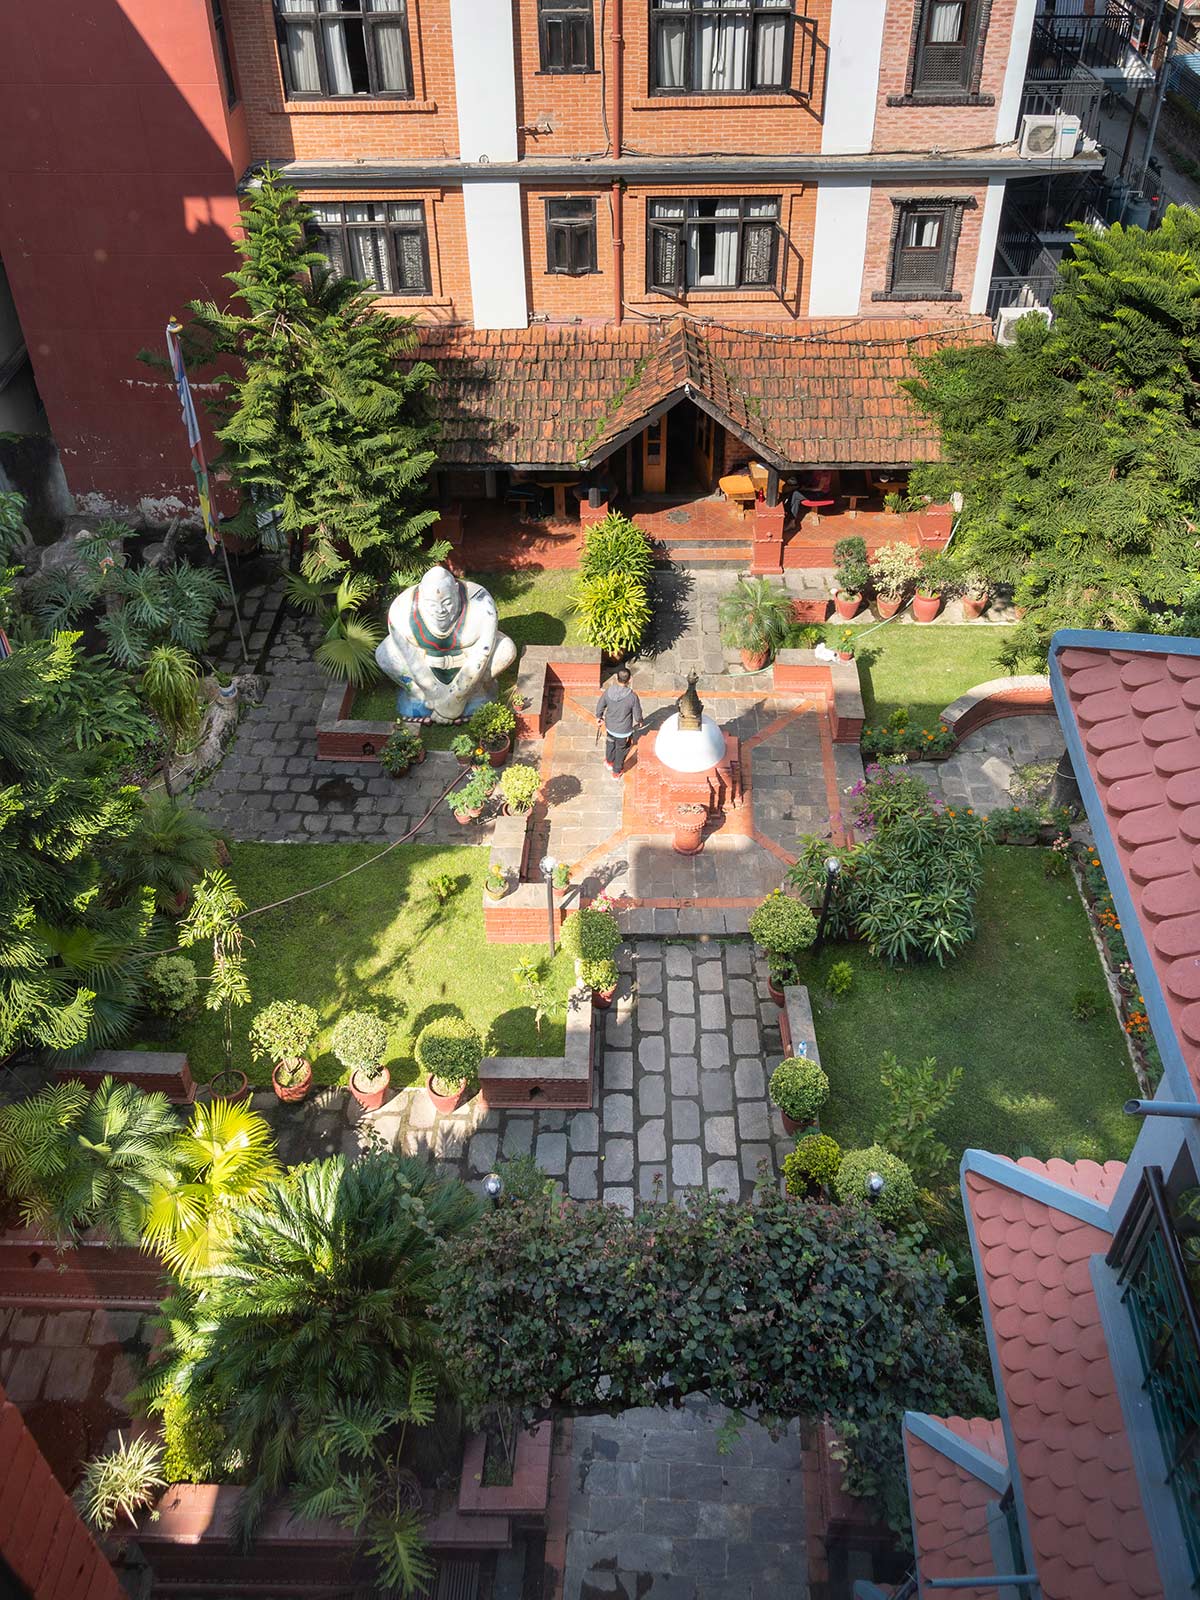 Hôtel Ganesh Himal, Katmandou, Népal / Ganesh Himal Hotel, Katmandou, Nepal